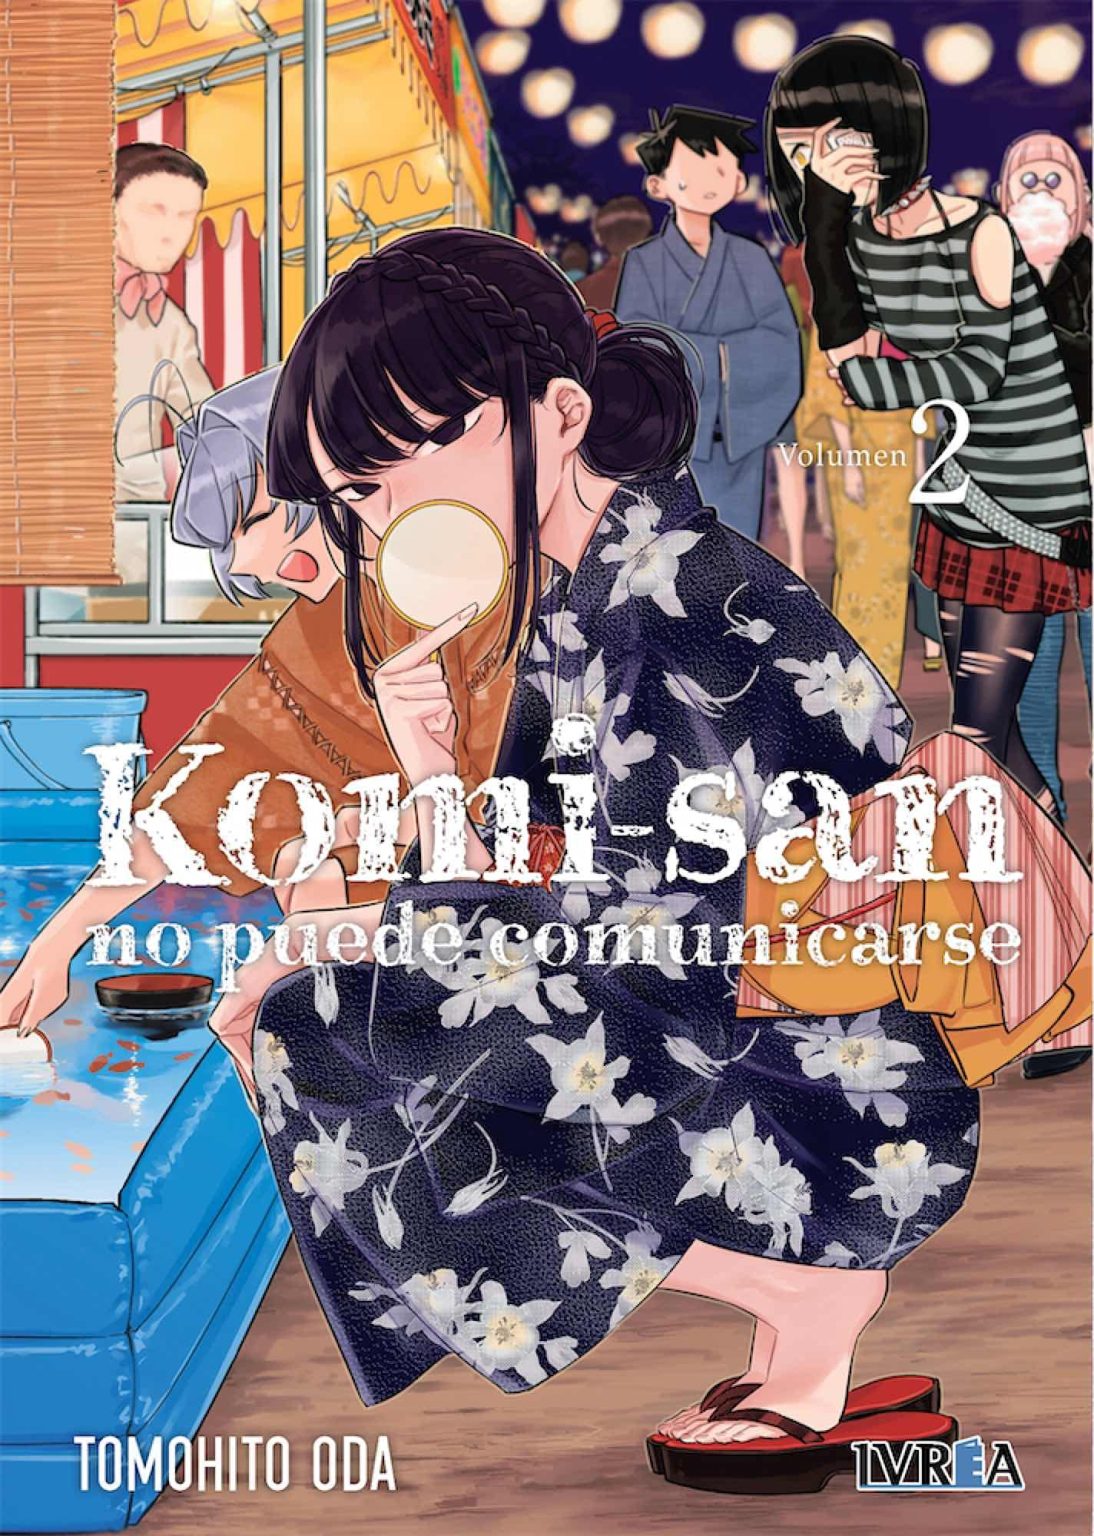 Komi-san no puede comunicarse - Mangaes - Donde vive el manga y el anime